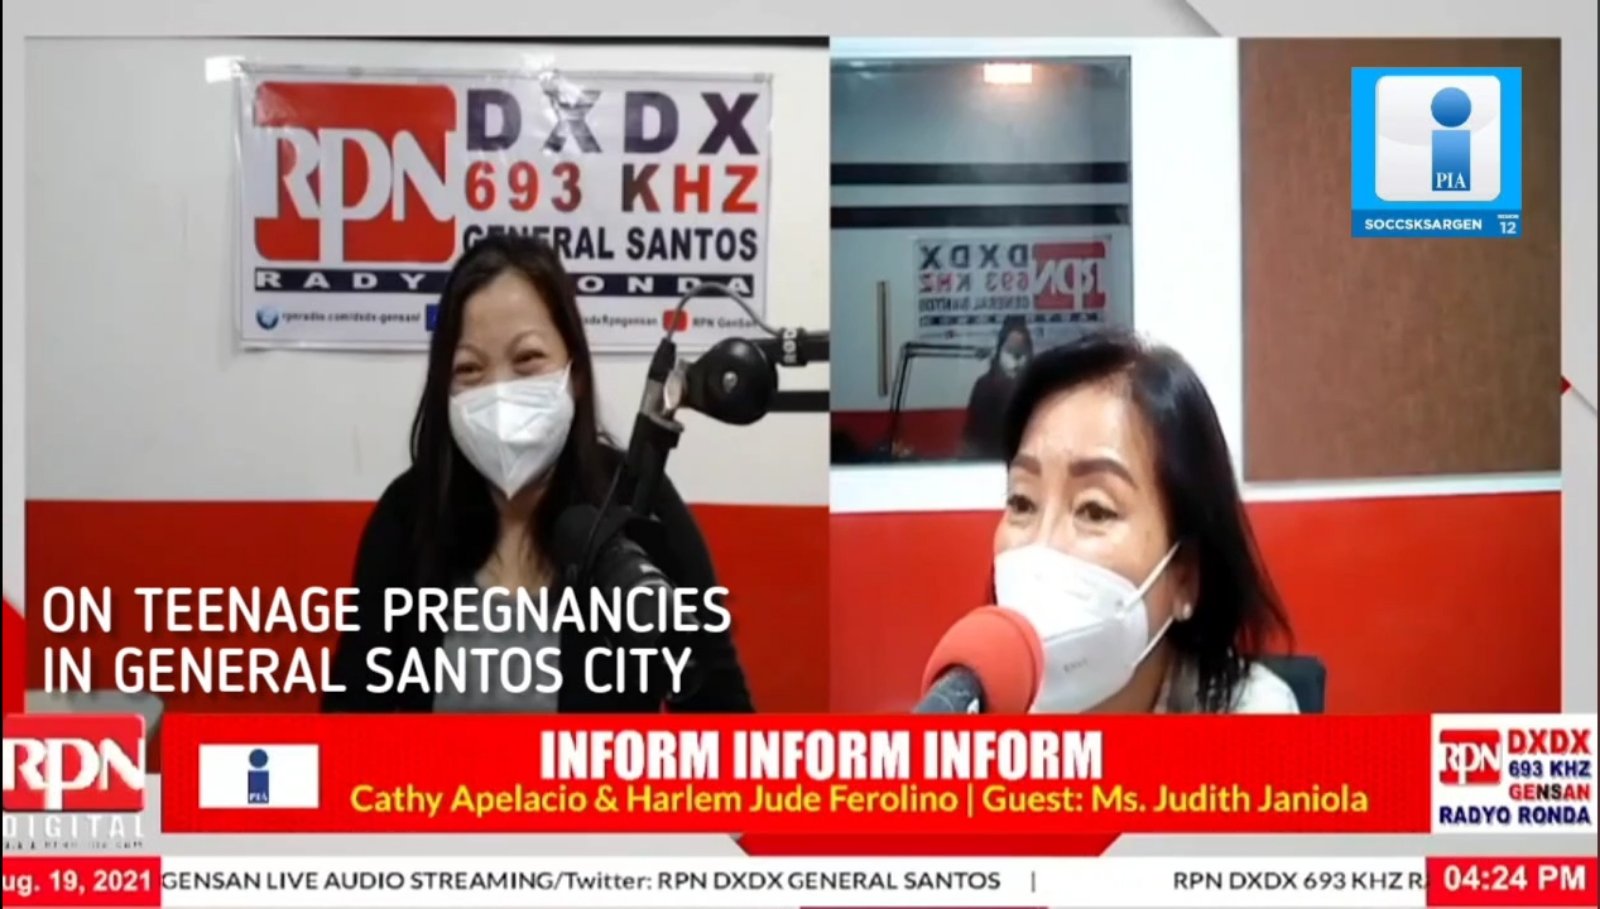 CPMO Gensan: Dapat walang repeat pregnancies muna below 18 years old